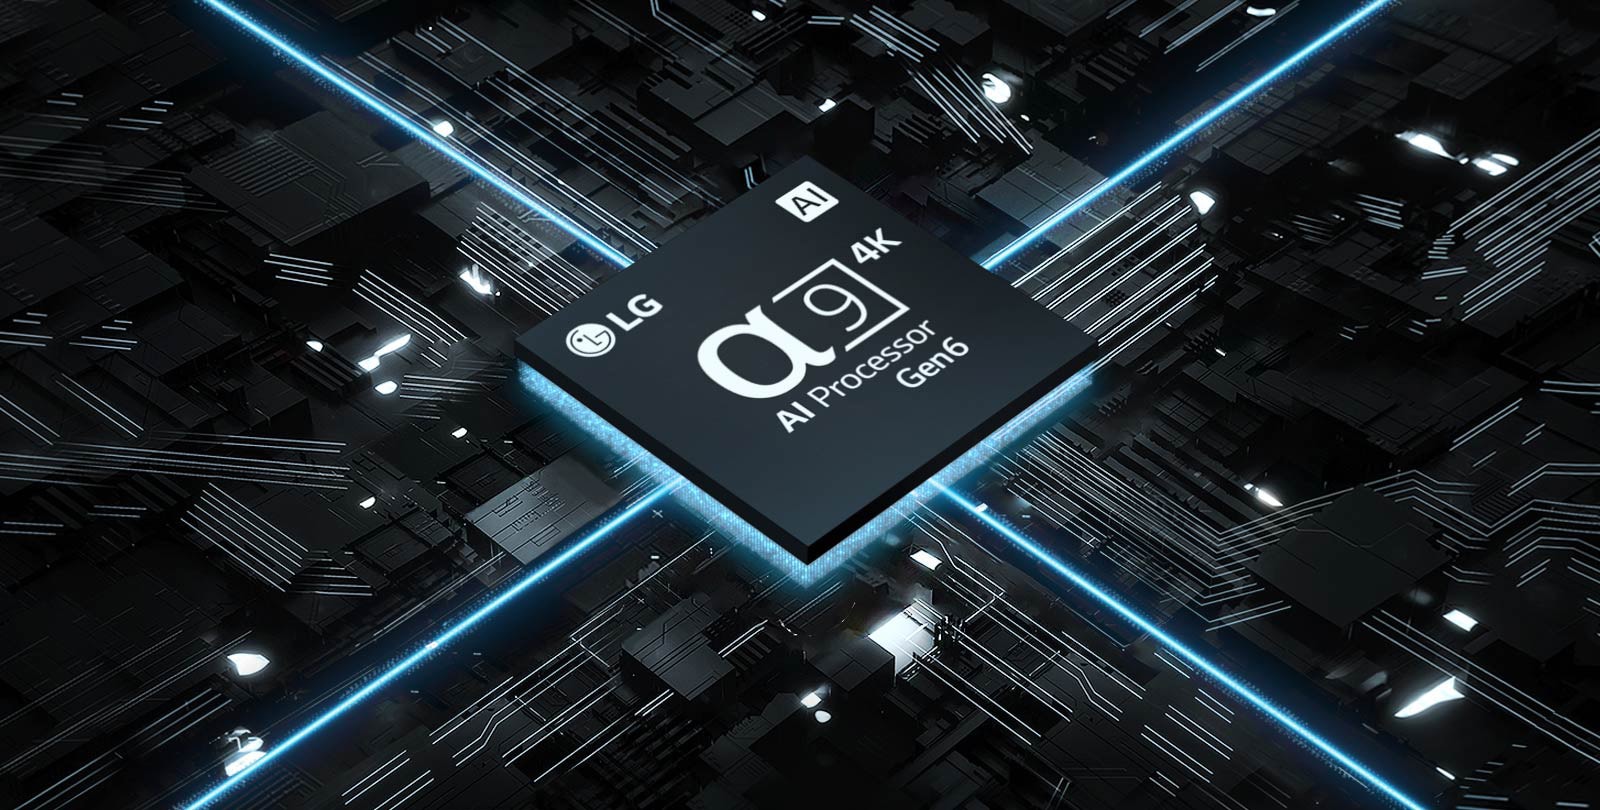 Pogled na procesor 6. generacije 4K α9 z umetno inteligenco na montažni plošči.  Plošča je osvetljena, iz čipa izhaja modra svetloba, ki označuje njegovo moč.